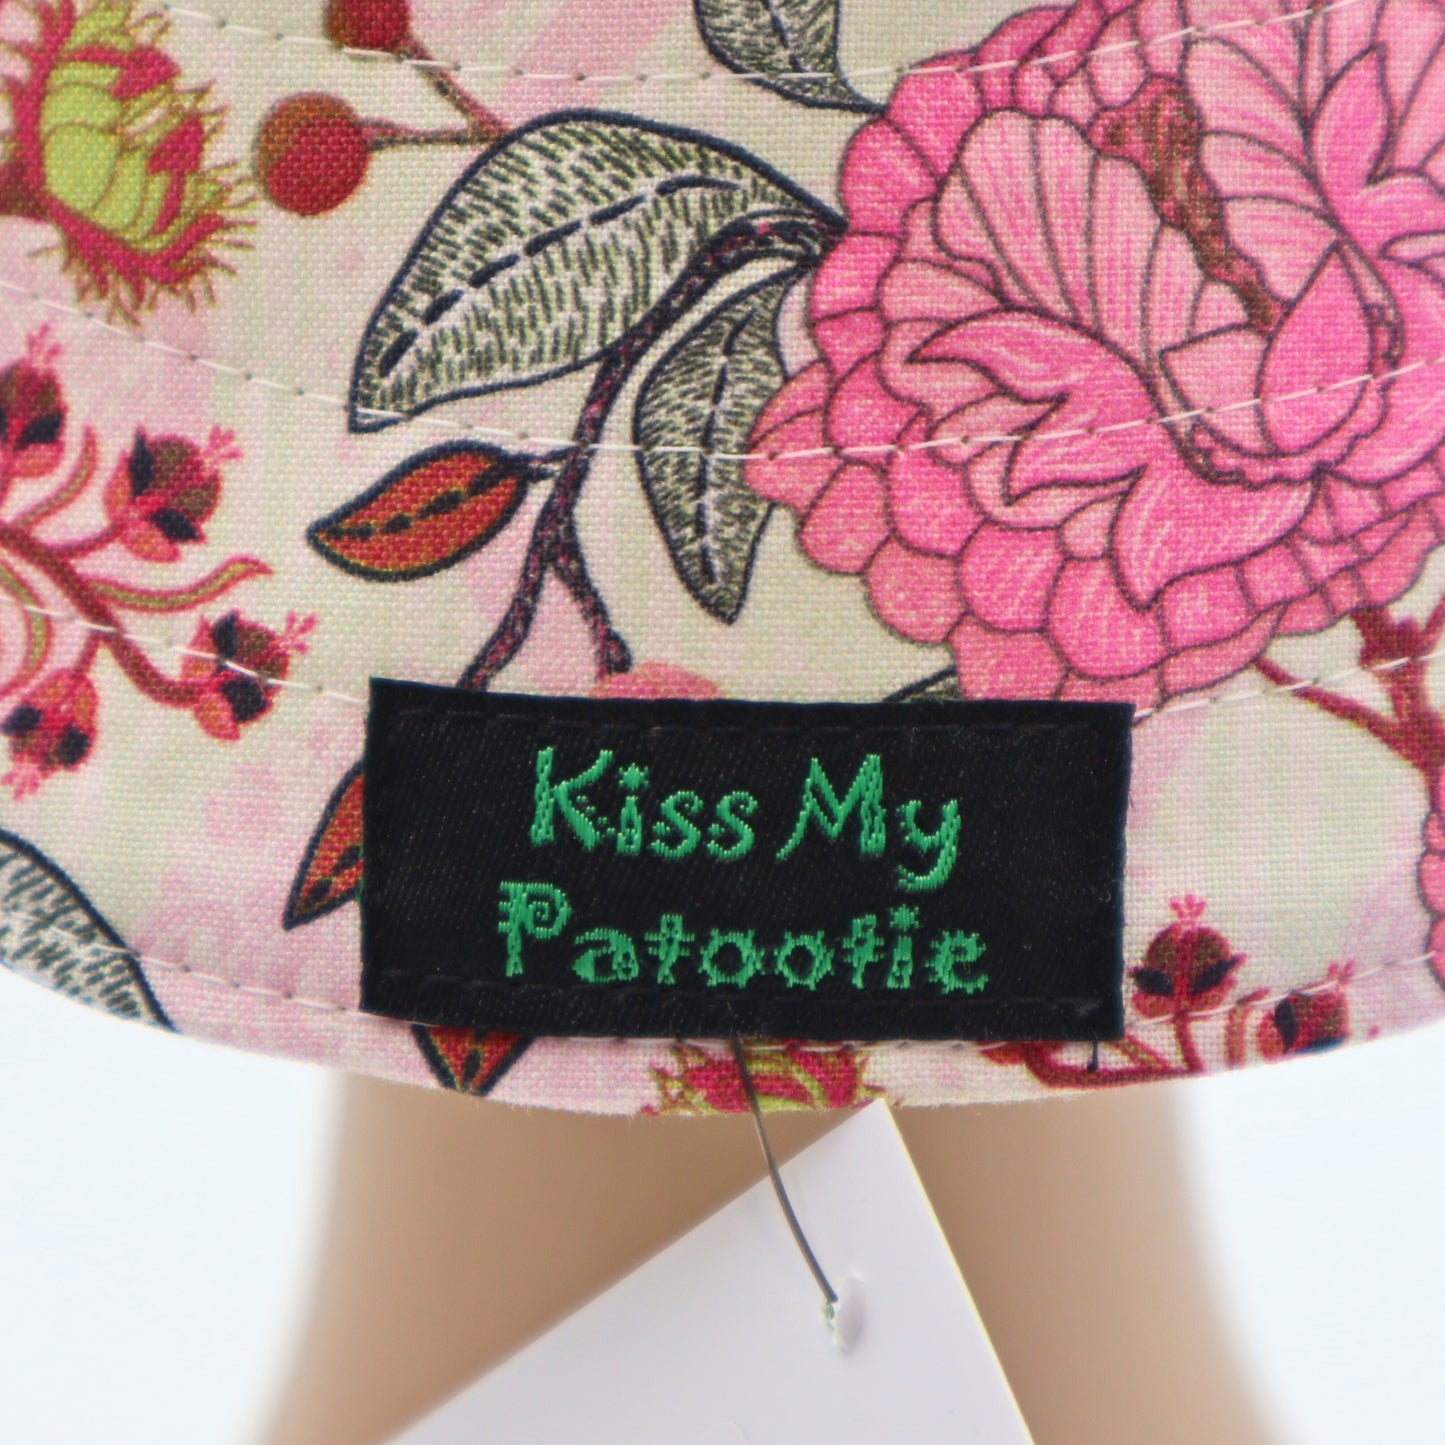 Reversible Sun Hat - Ladies & Girls sizes - green / pink floral